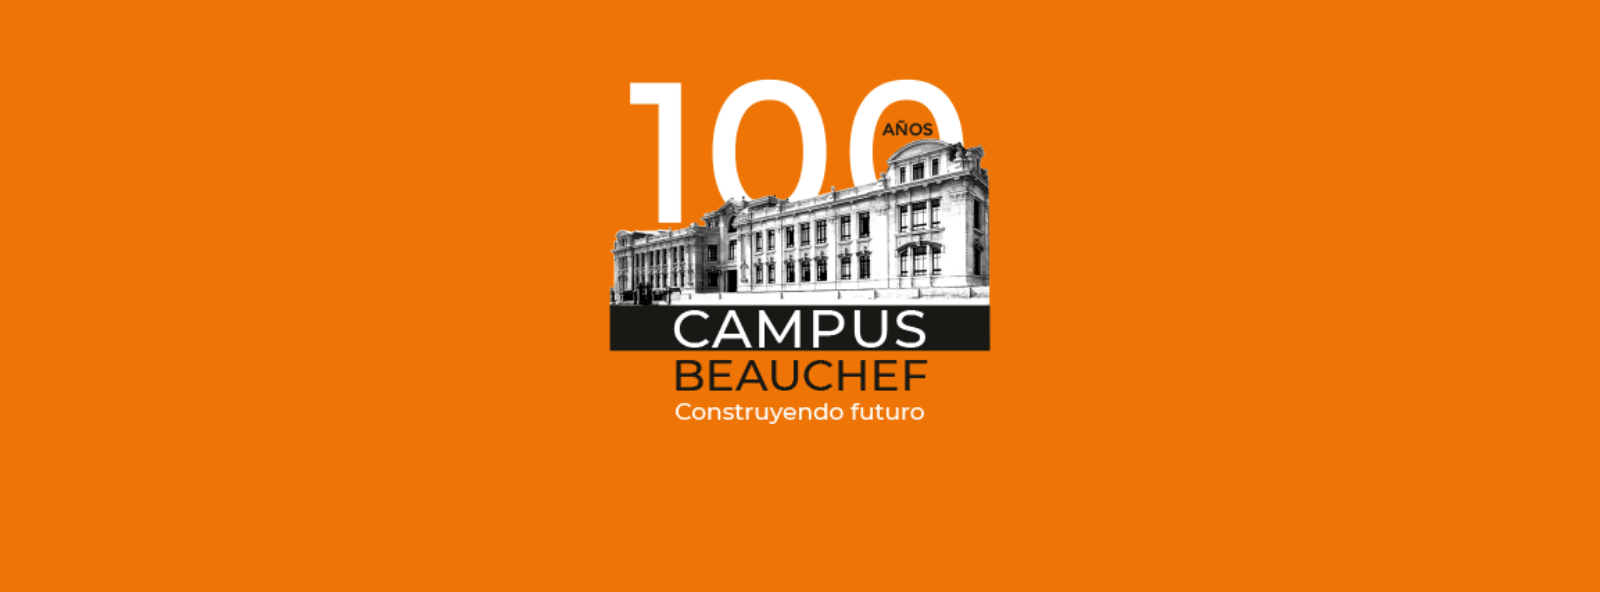 100 años Campus Beauchef